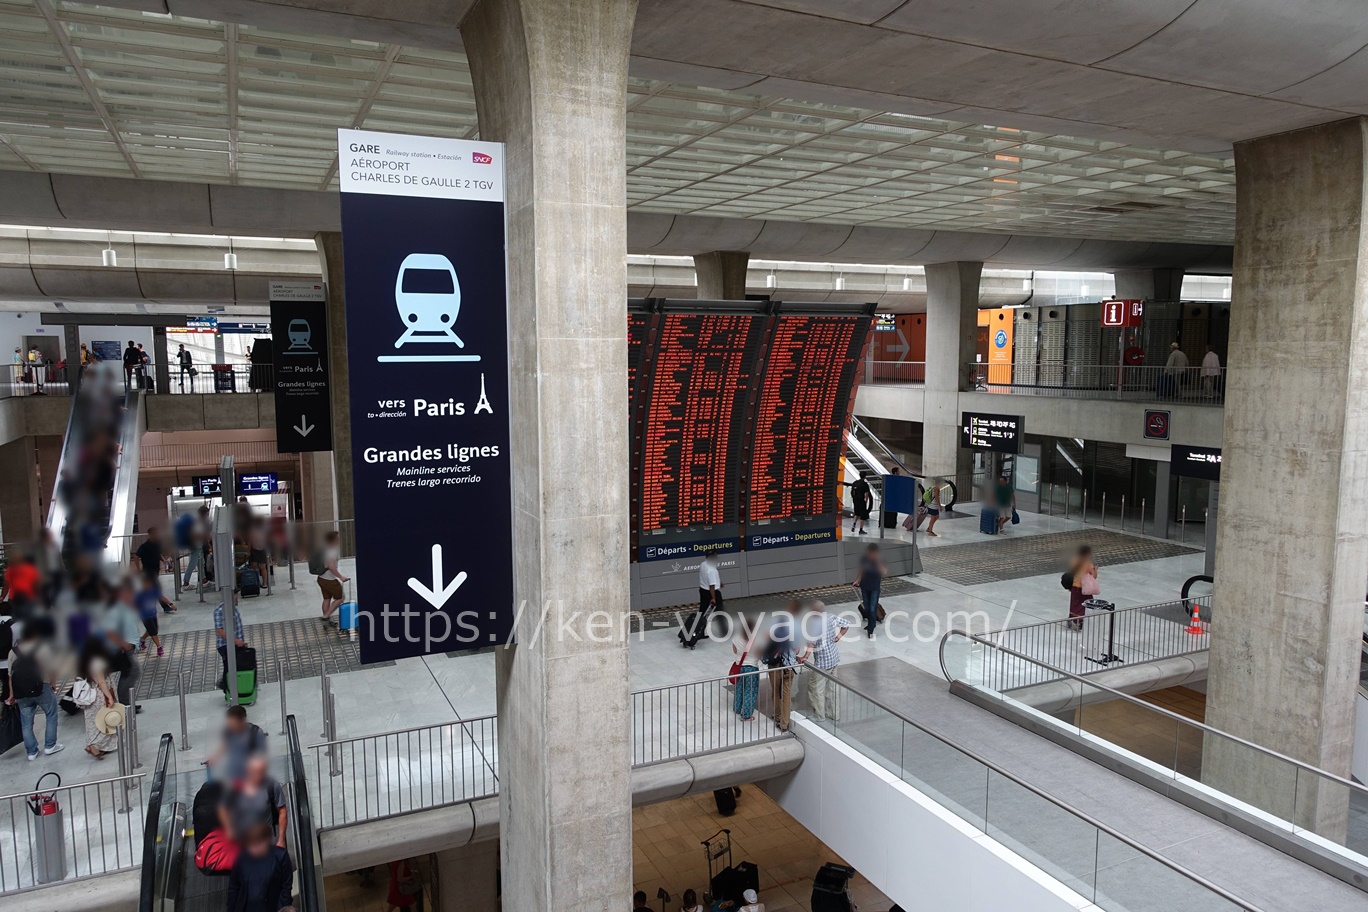 Aéroport Charles-de-Gaulle 2 - TGV